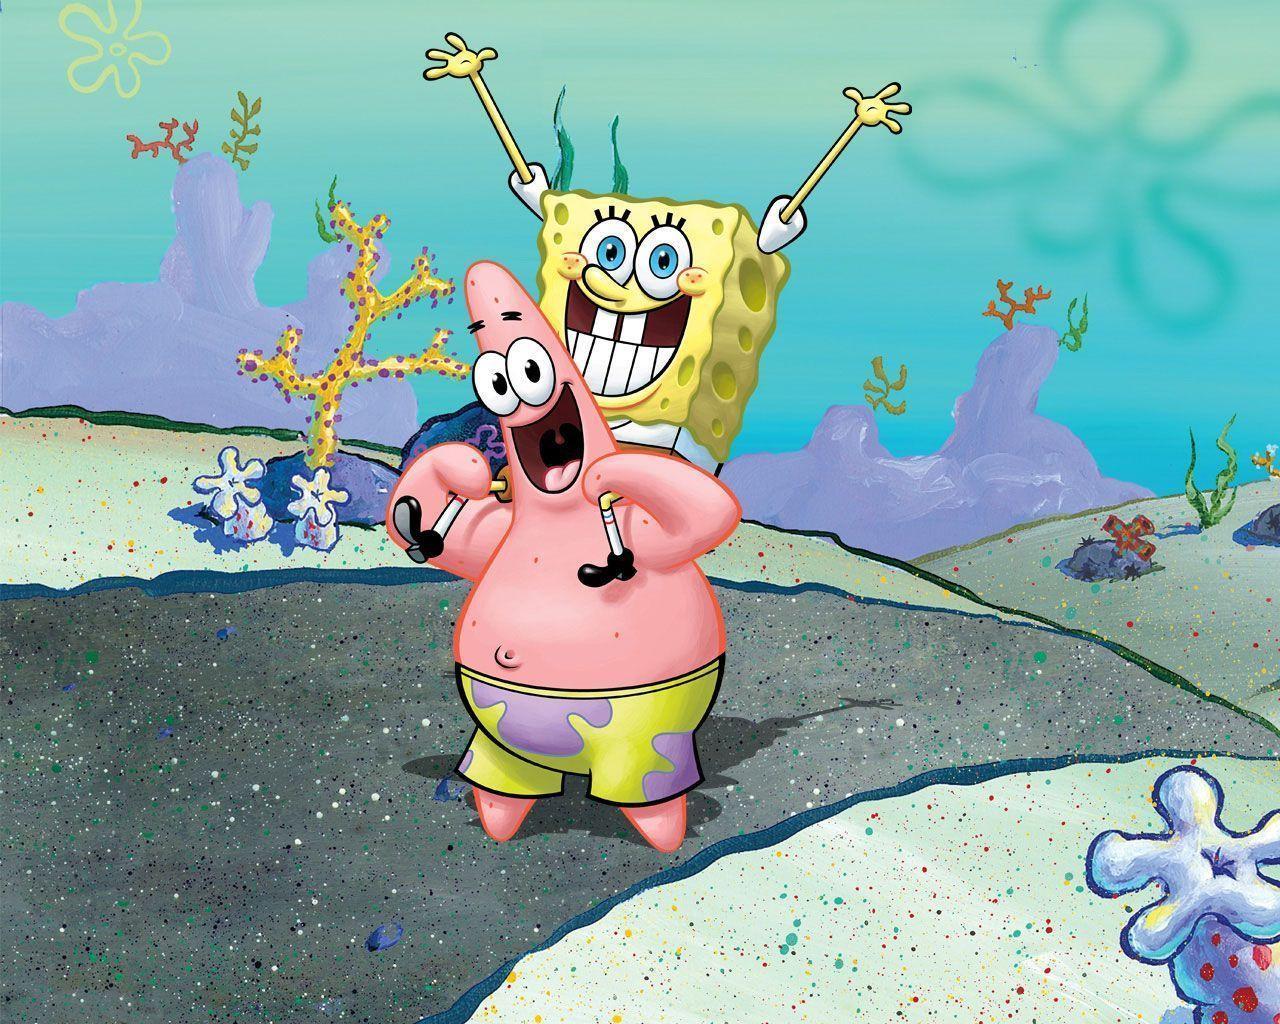 Spongebob & Patrick Squarepants Wallpaper 31281722